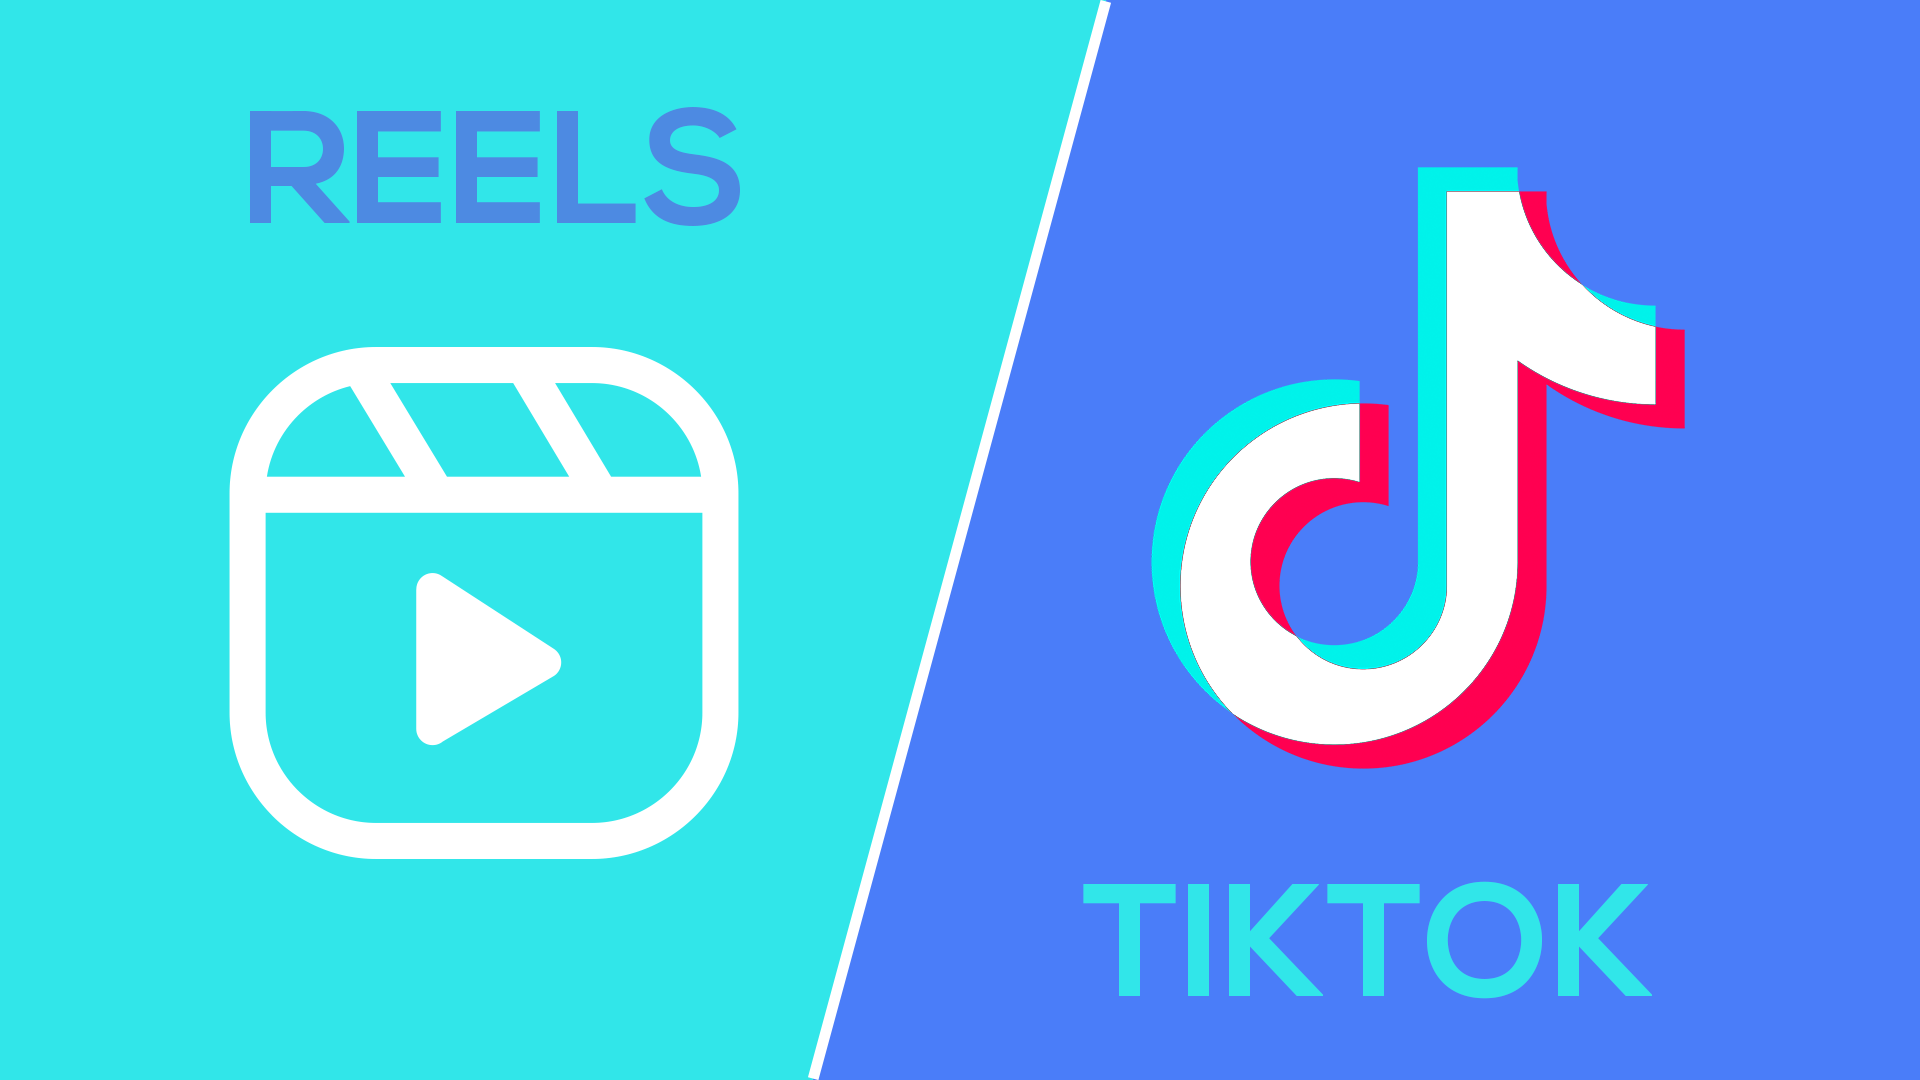 TikTok testa uploads de vídeos com duração de até 15 minutos